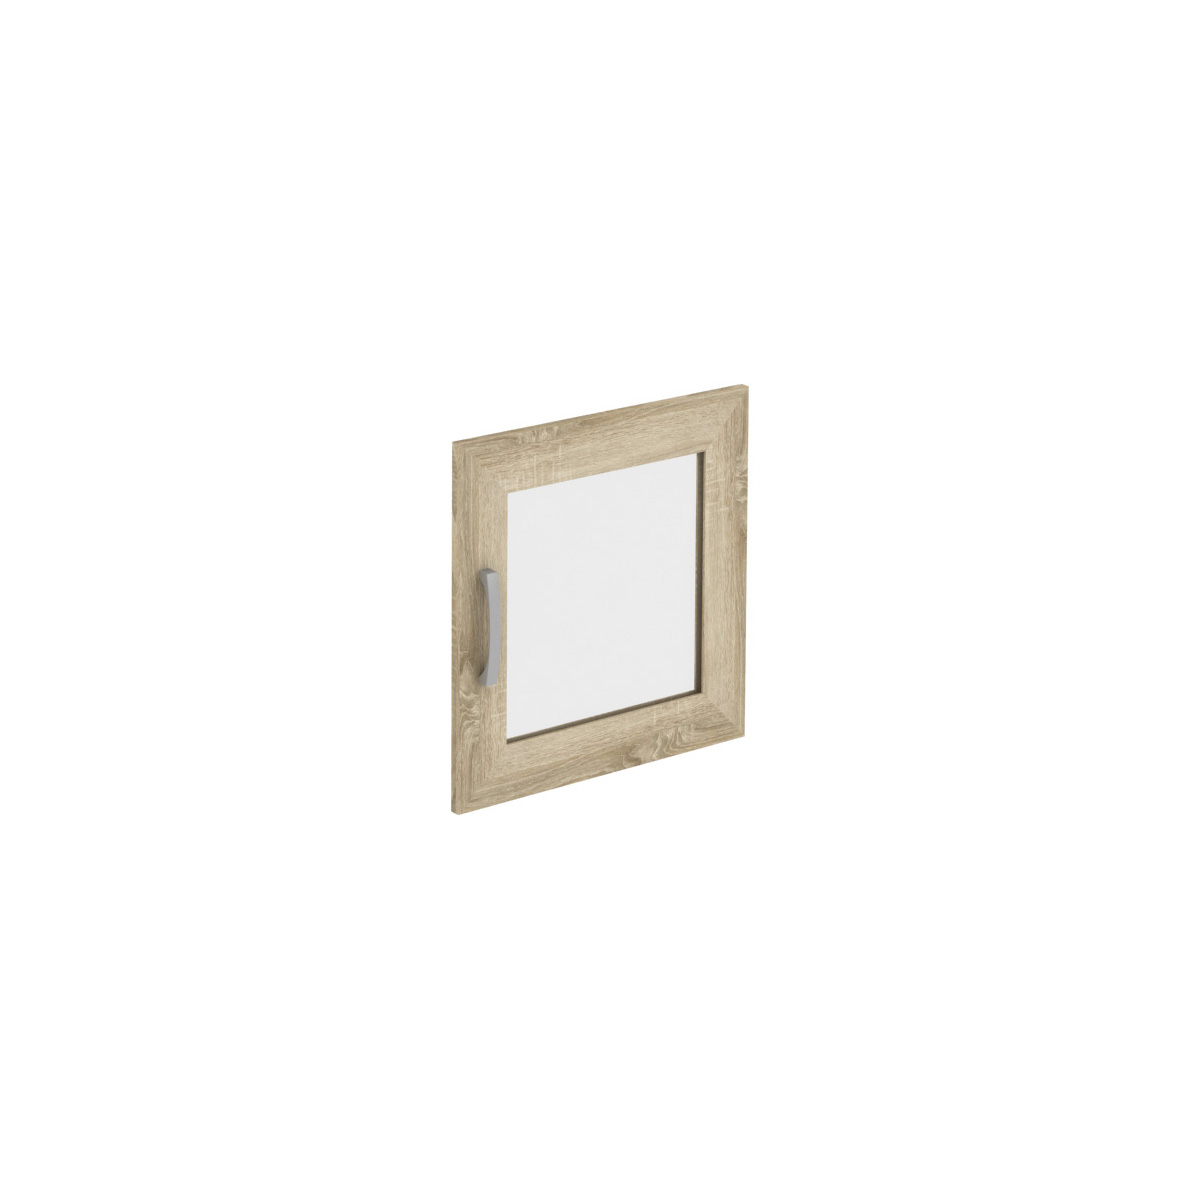 Д911.01 (1 шт.) дверь вставка стекло (444x444x18) 